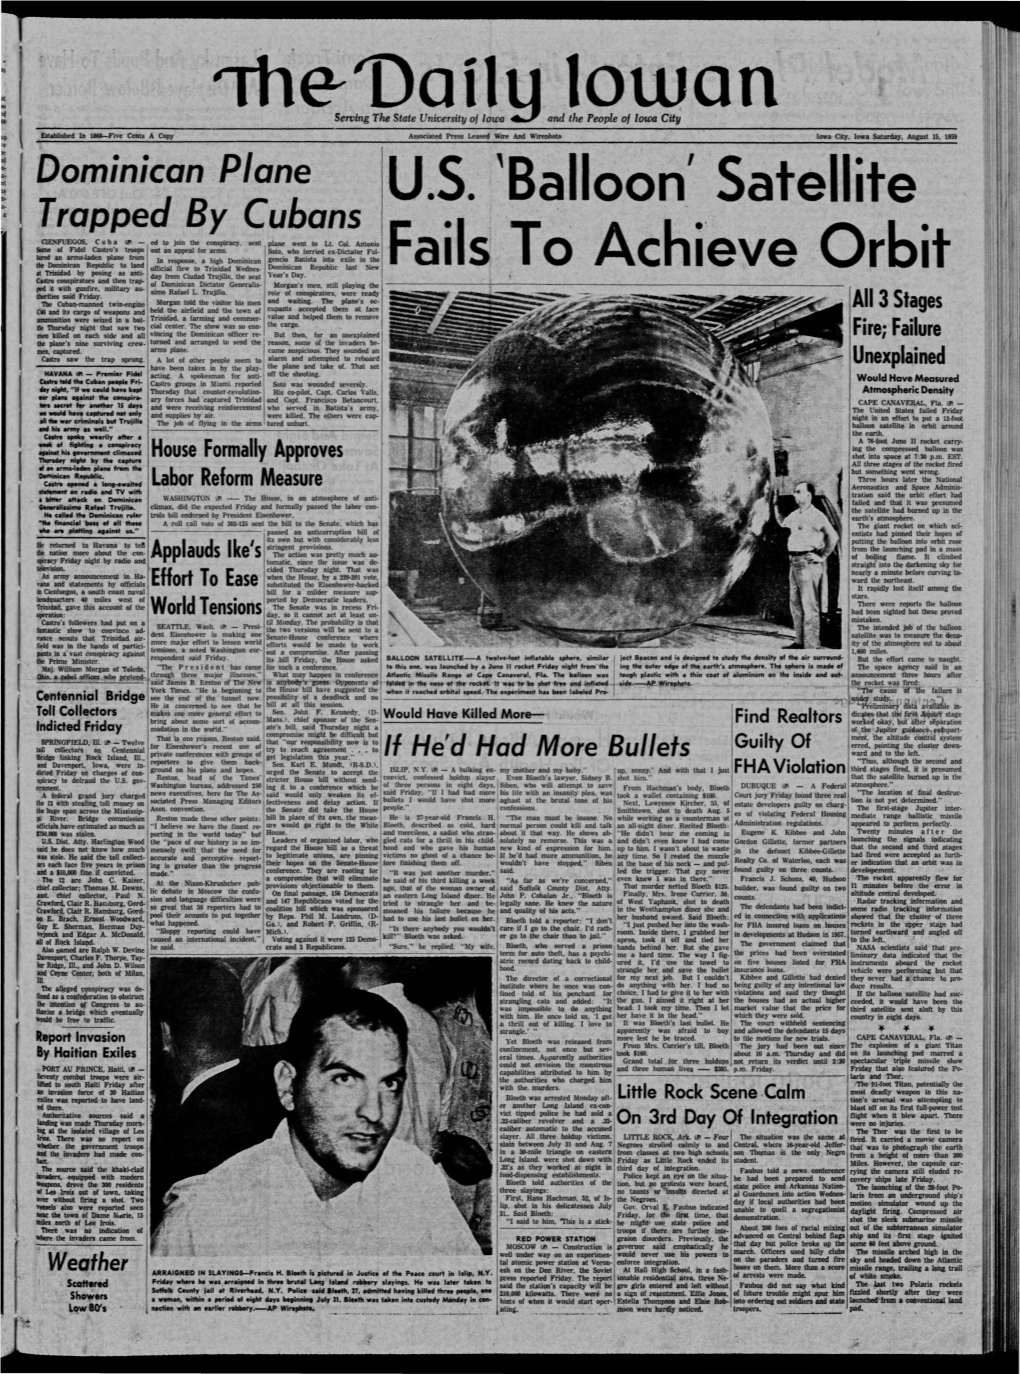 Daily Iowan (Iowa City, Iowa), 1959-08-15